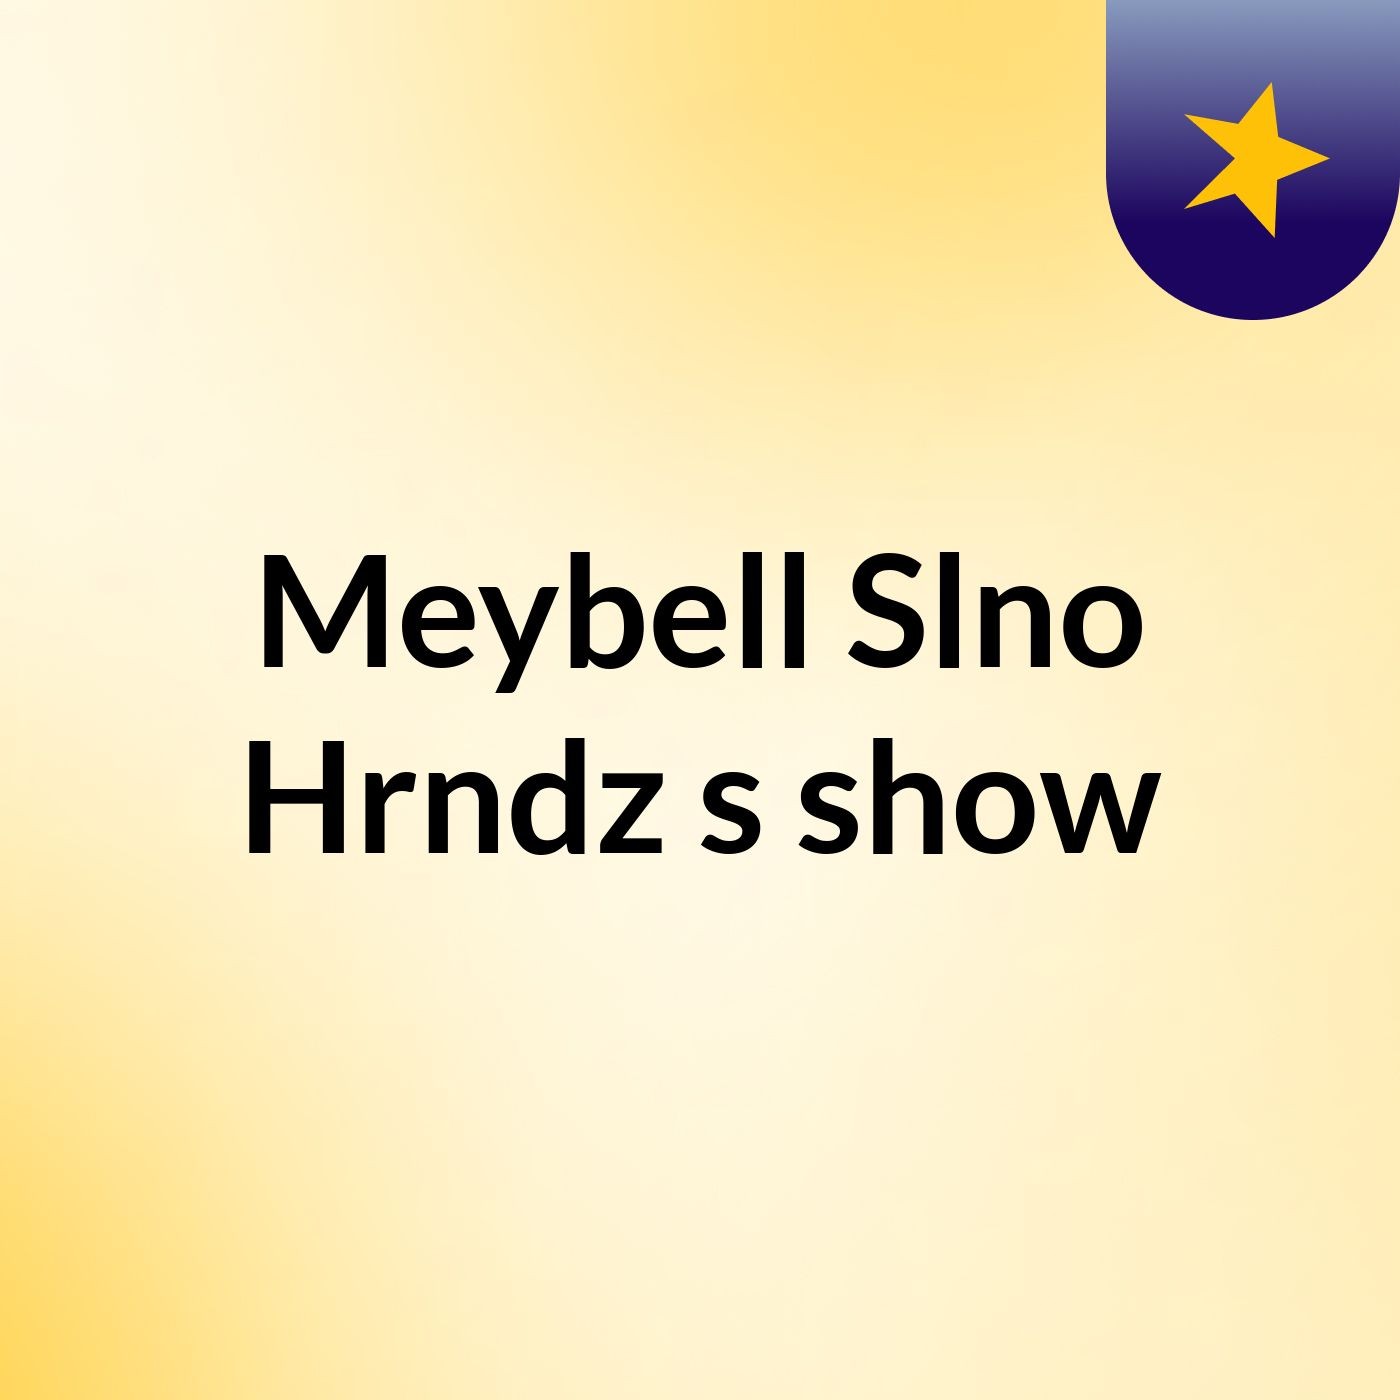 Meybell Slno Hrndz's show